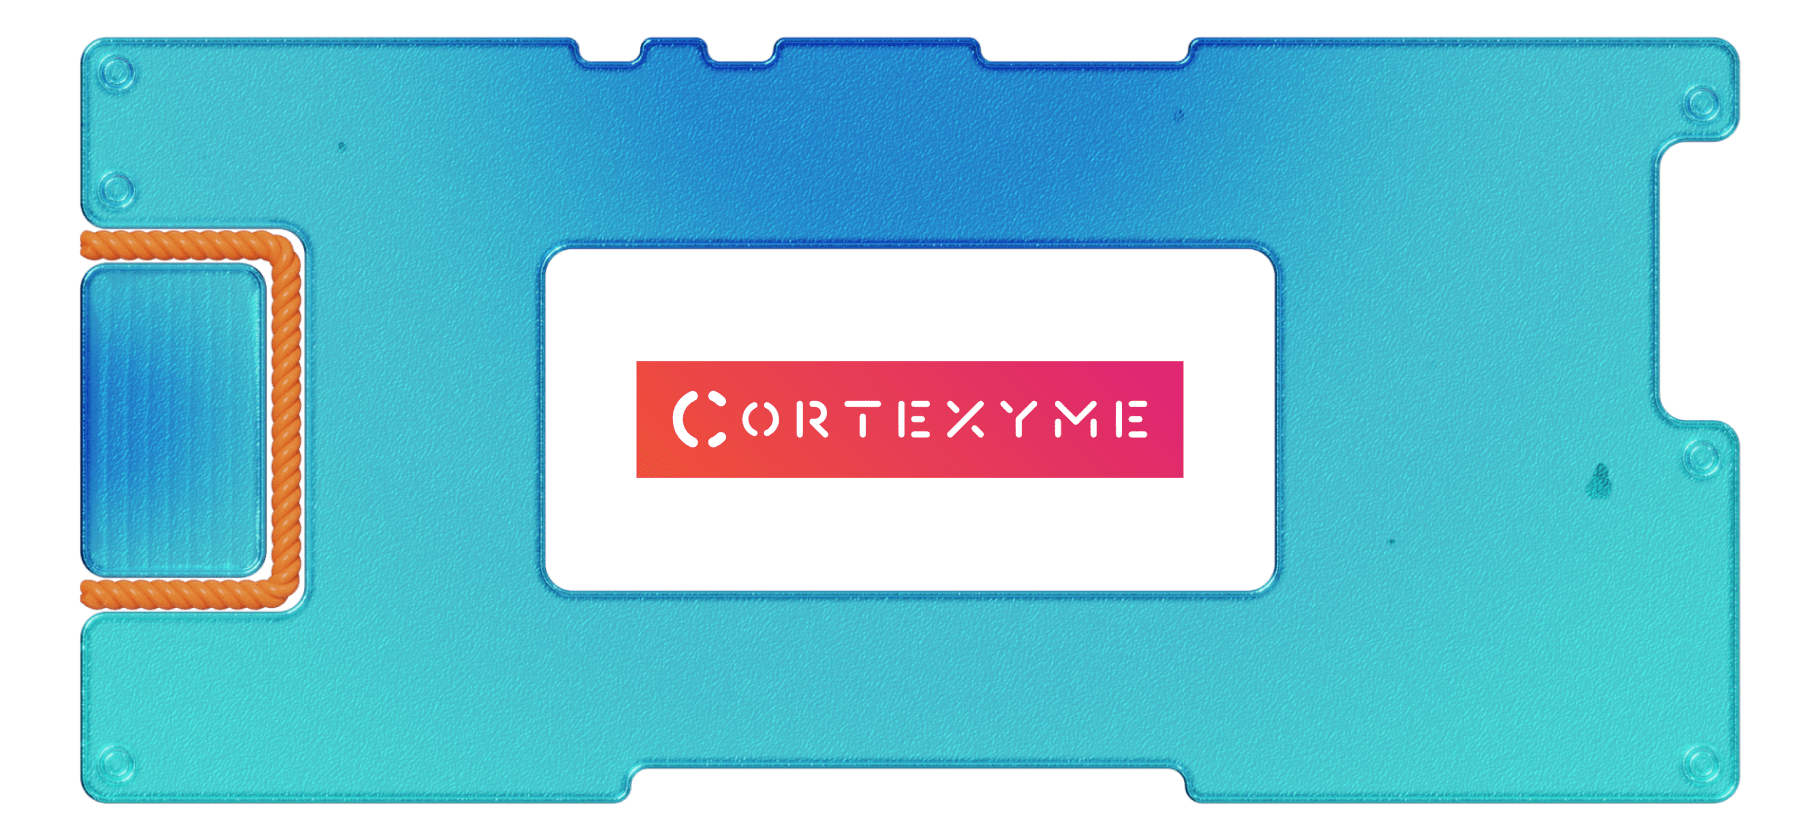 Обзор Cortexyme: инвестируем в борьбу с болезнью Альцгеймера